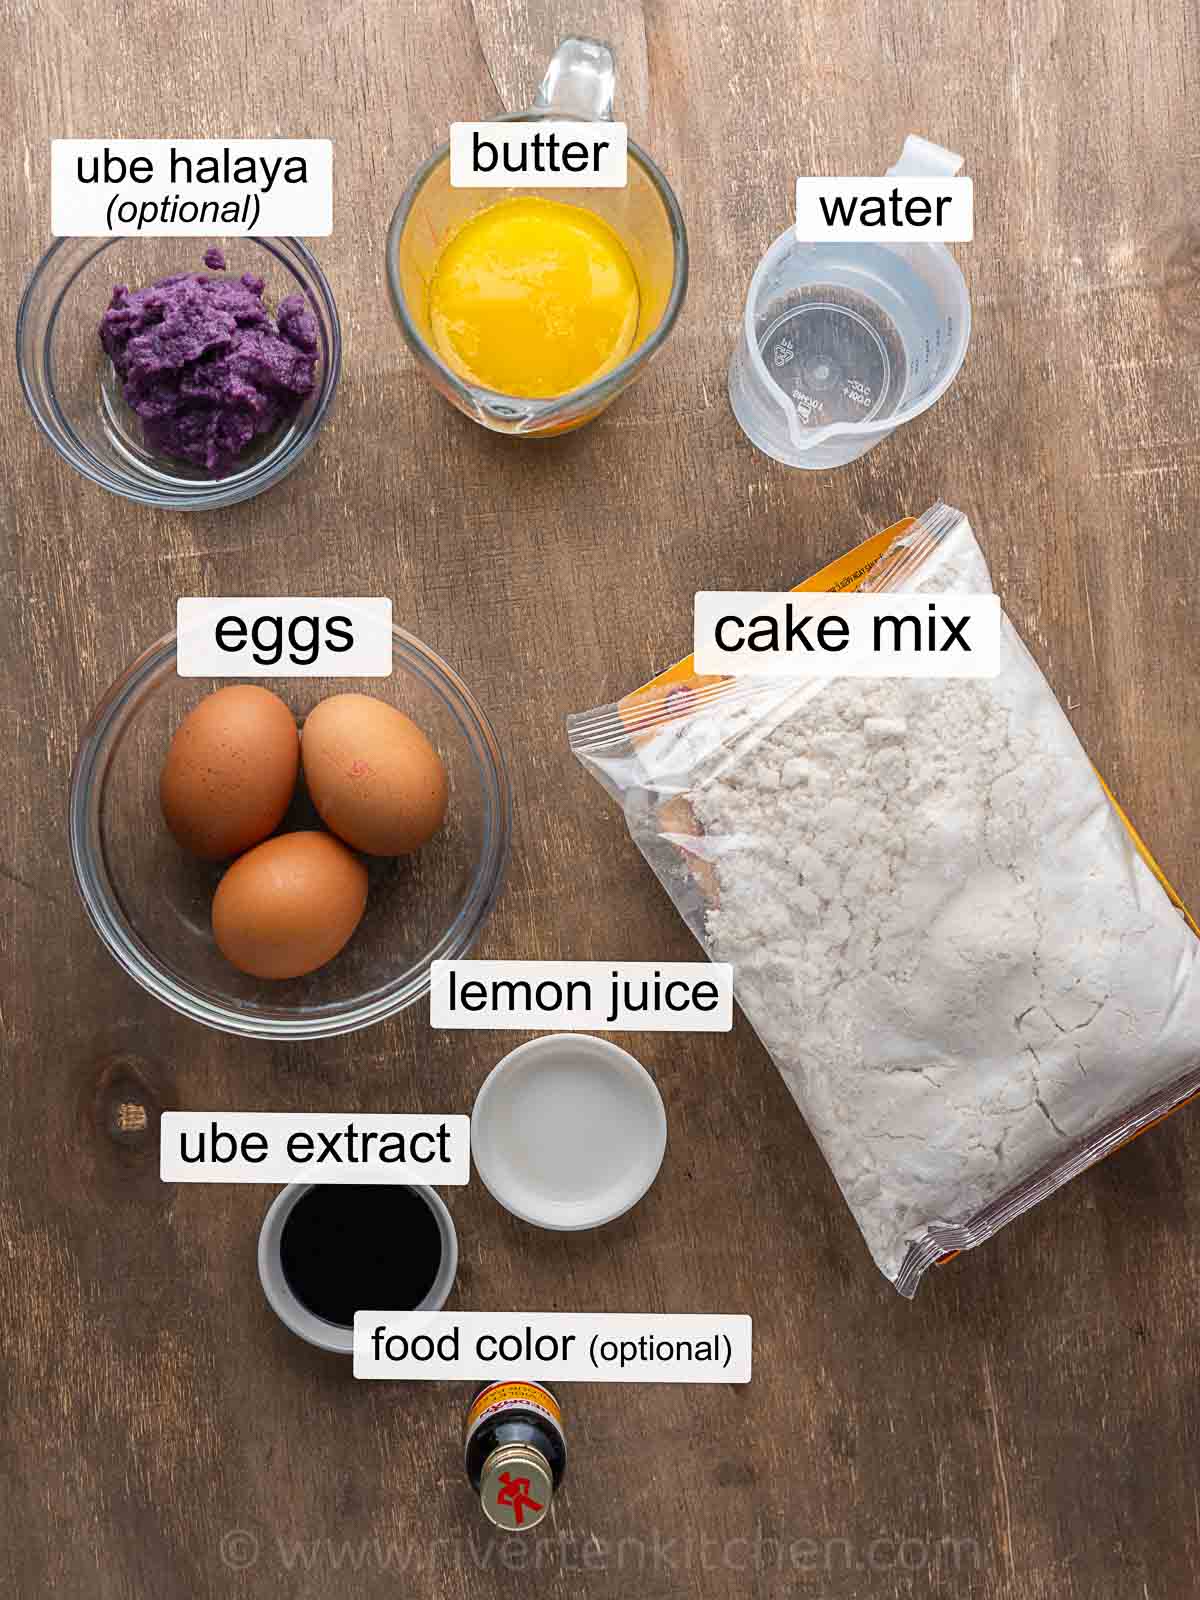 ube halaya, cake mix, large eggs, butter, water, ube extract, lemon juice and optional purple color.